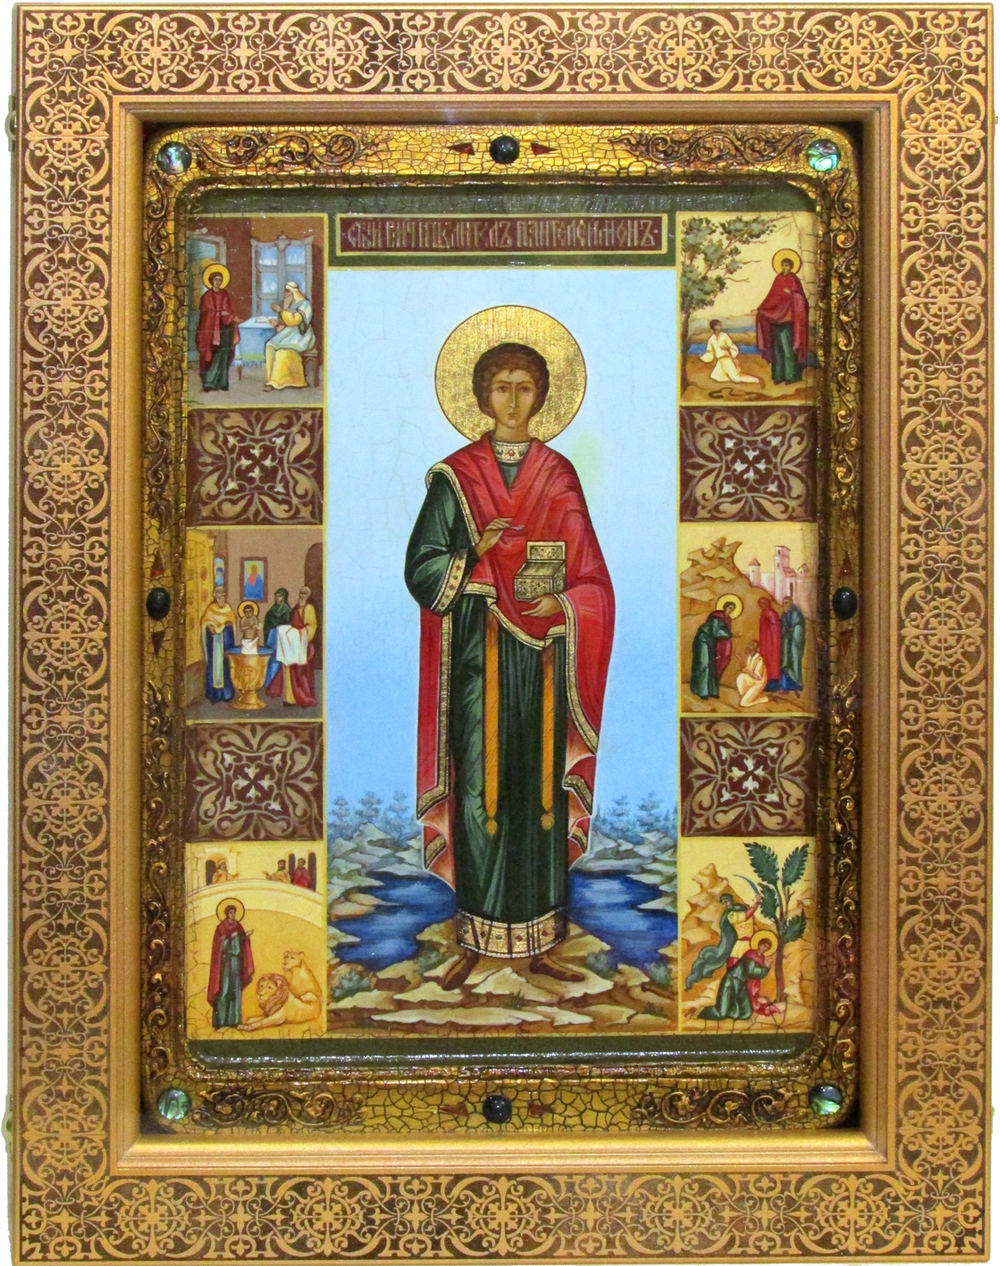 Большая Живописная икона Святой Великомученик и Целитель Пантелеймон 42х29см на кипарисе в березовом киоте